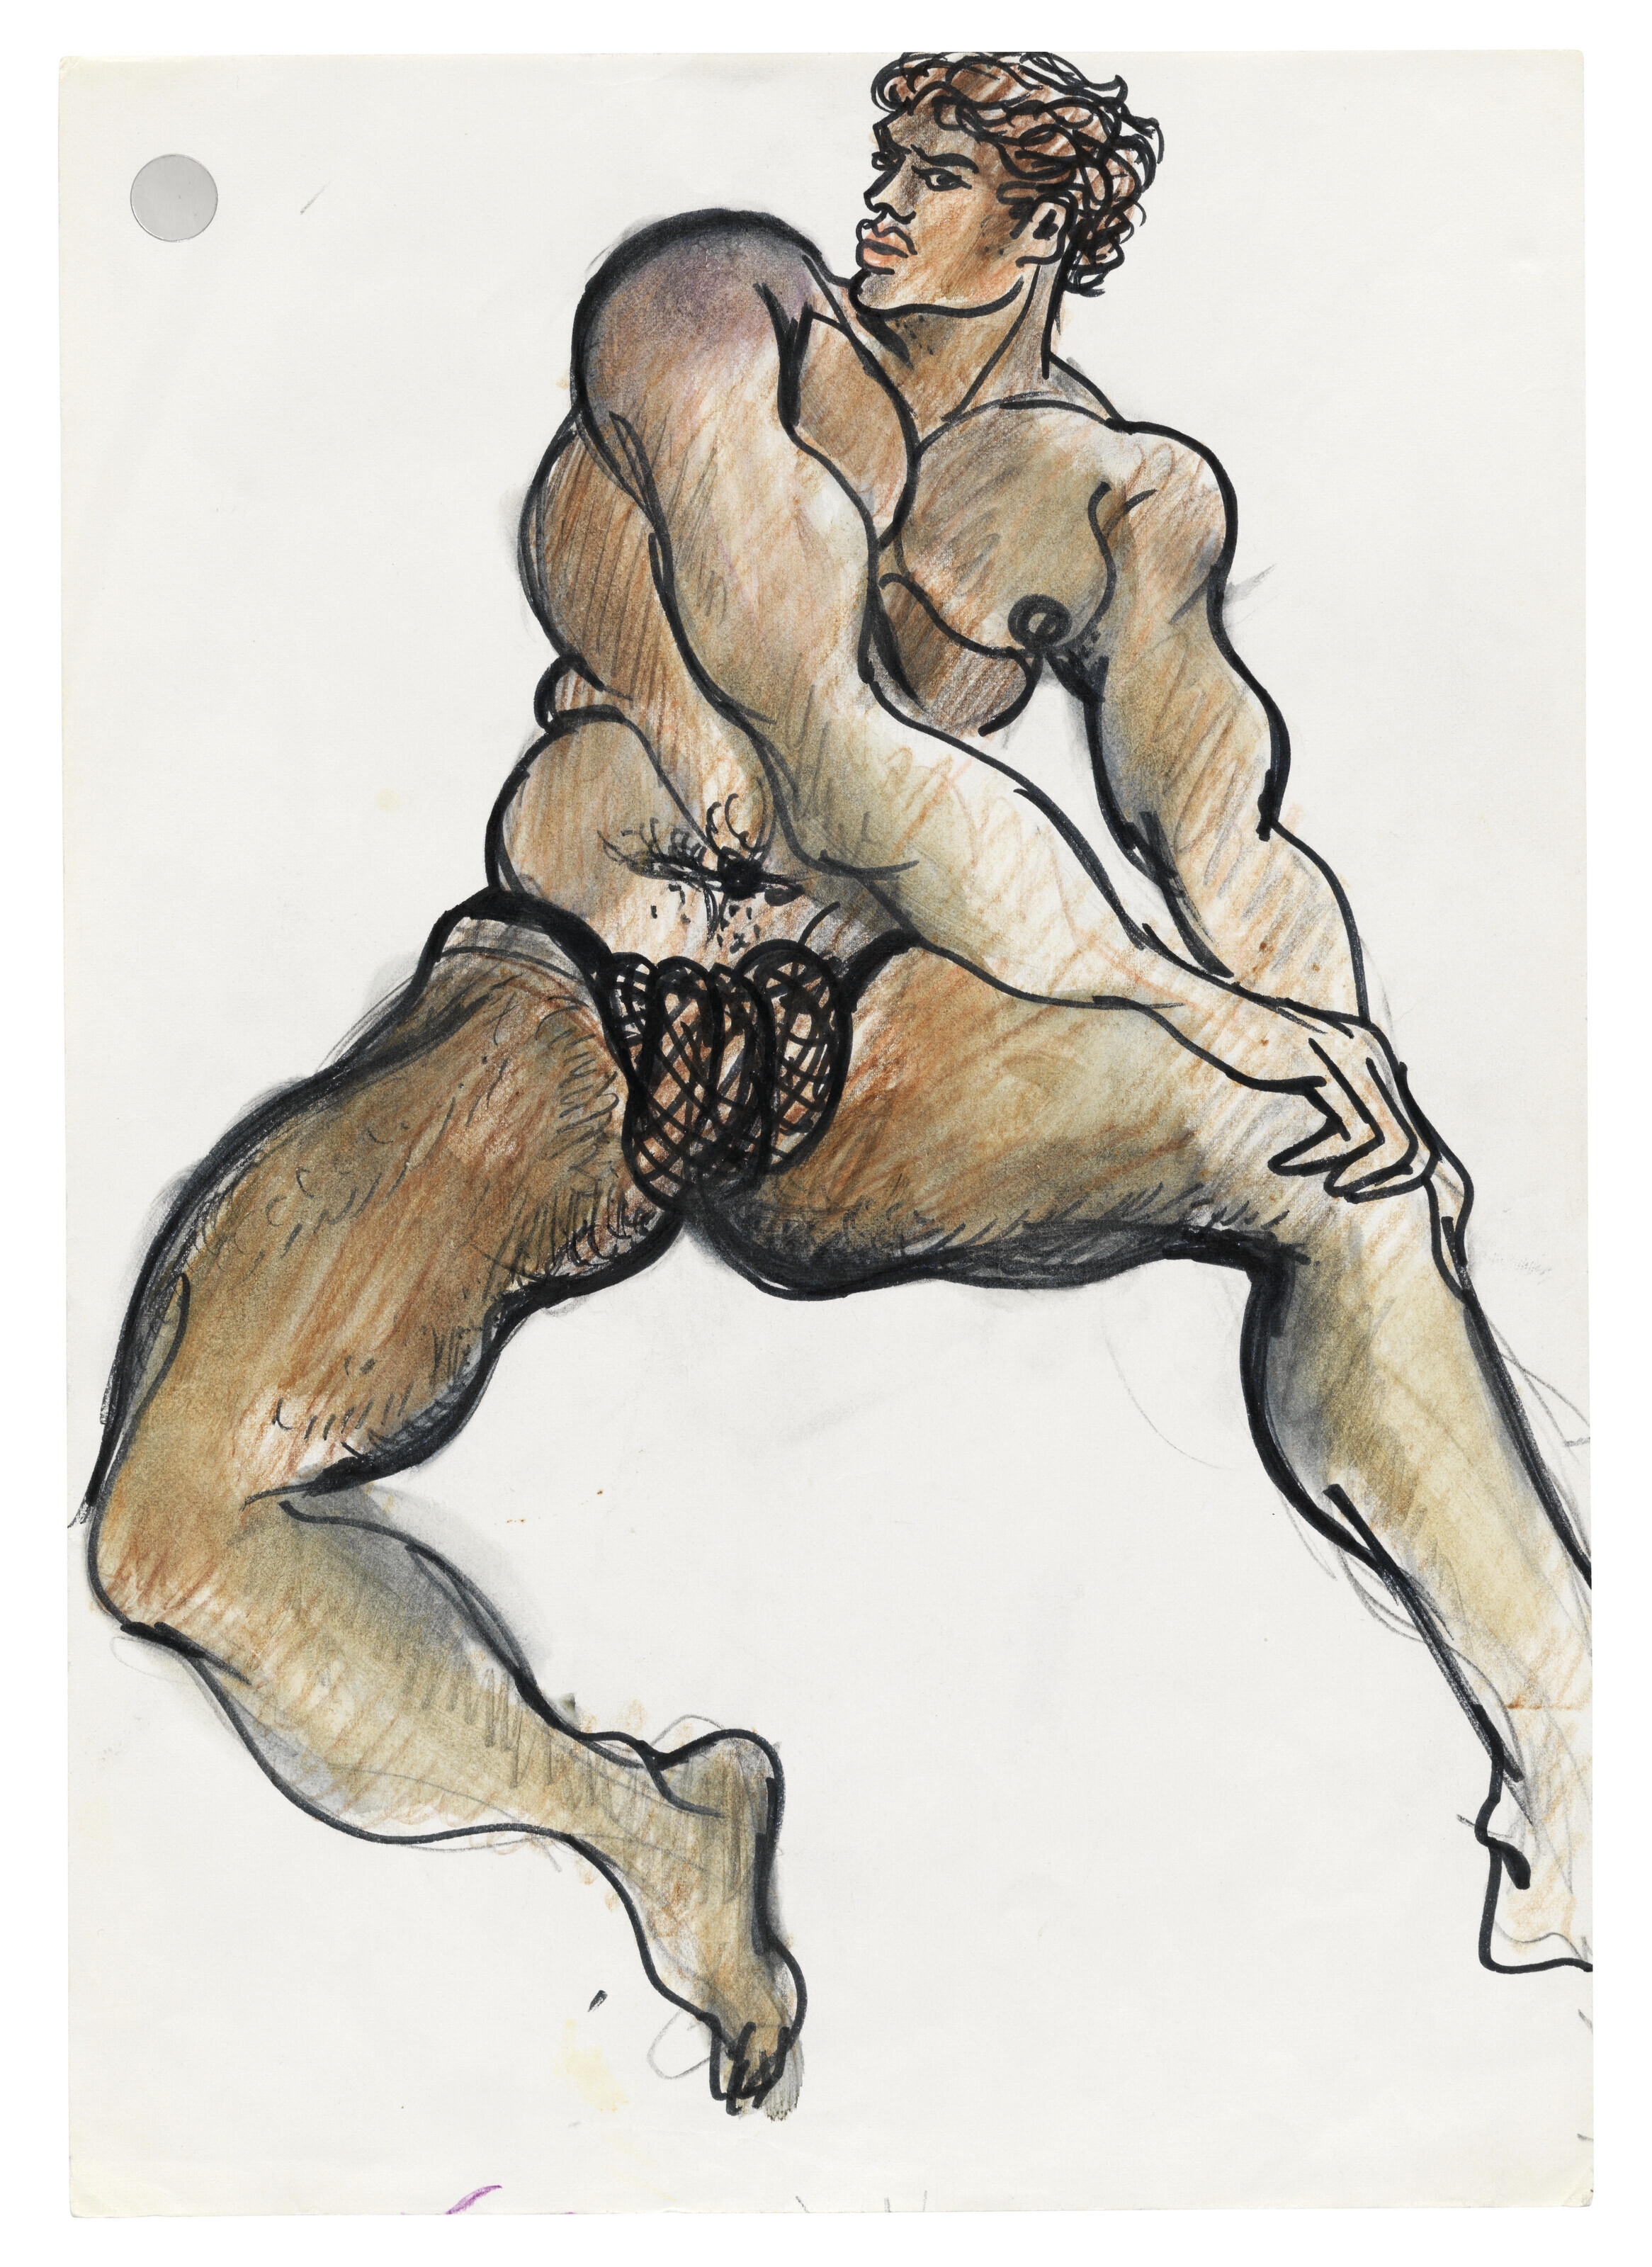 Yves Saint Laurent, Erotique (1968 - 1972)